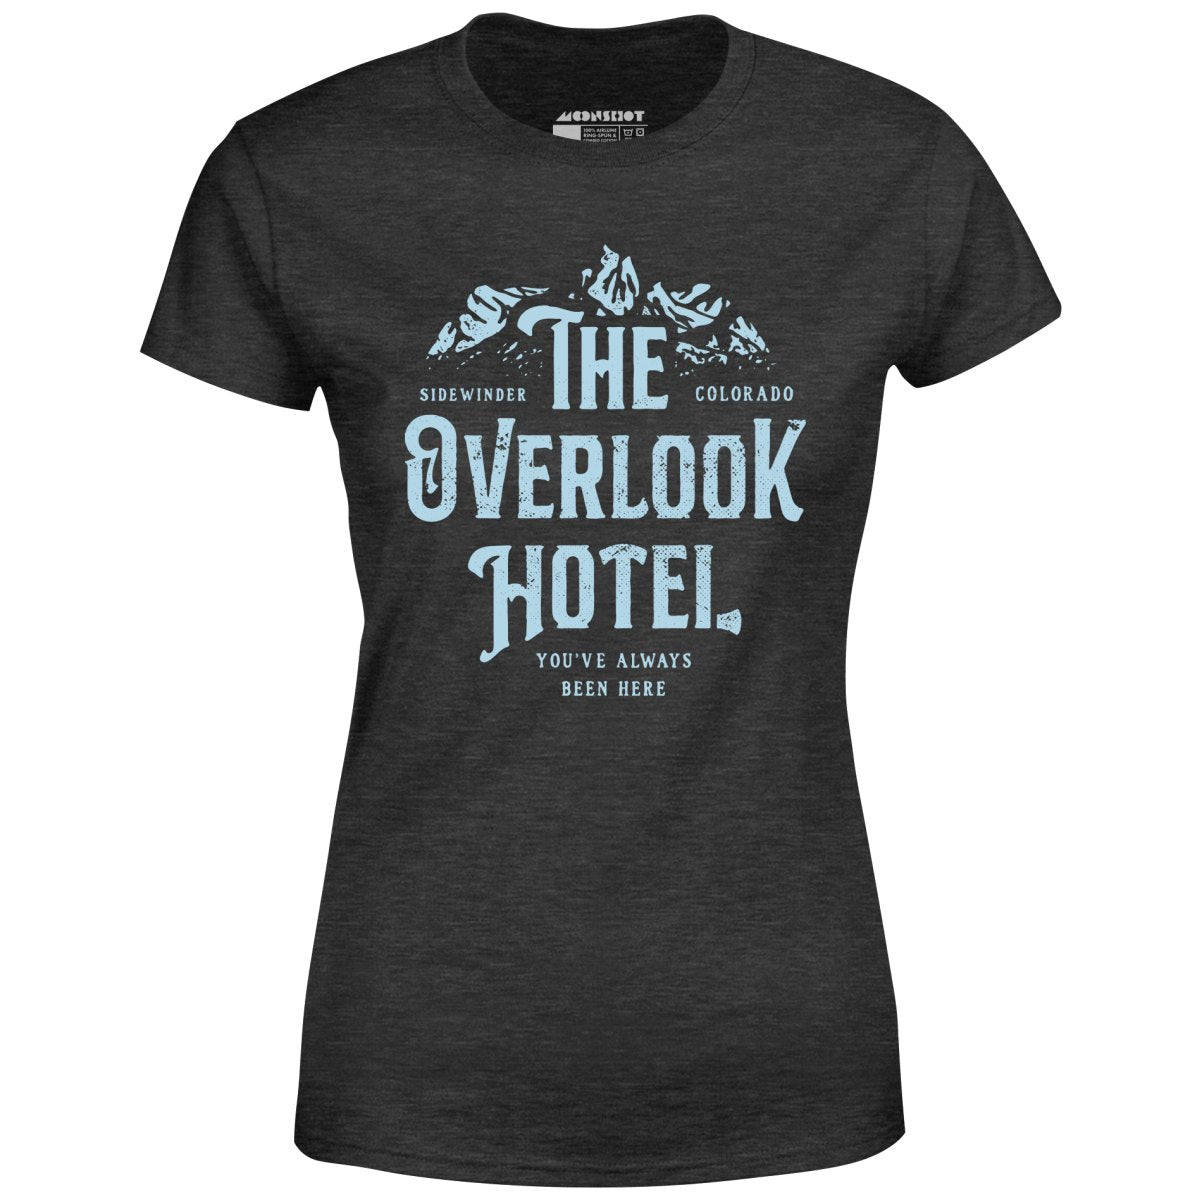 The Overlook Hotel - Women's T-Shirt